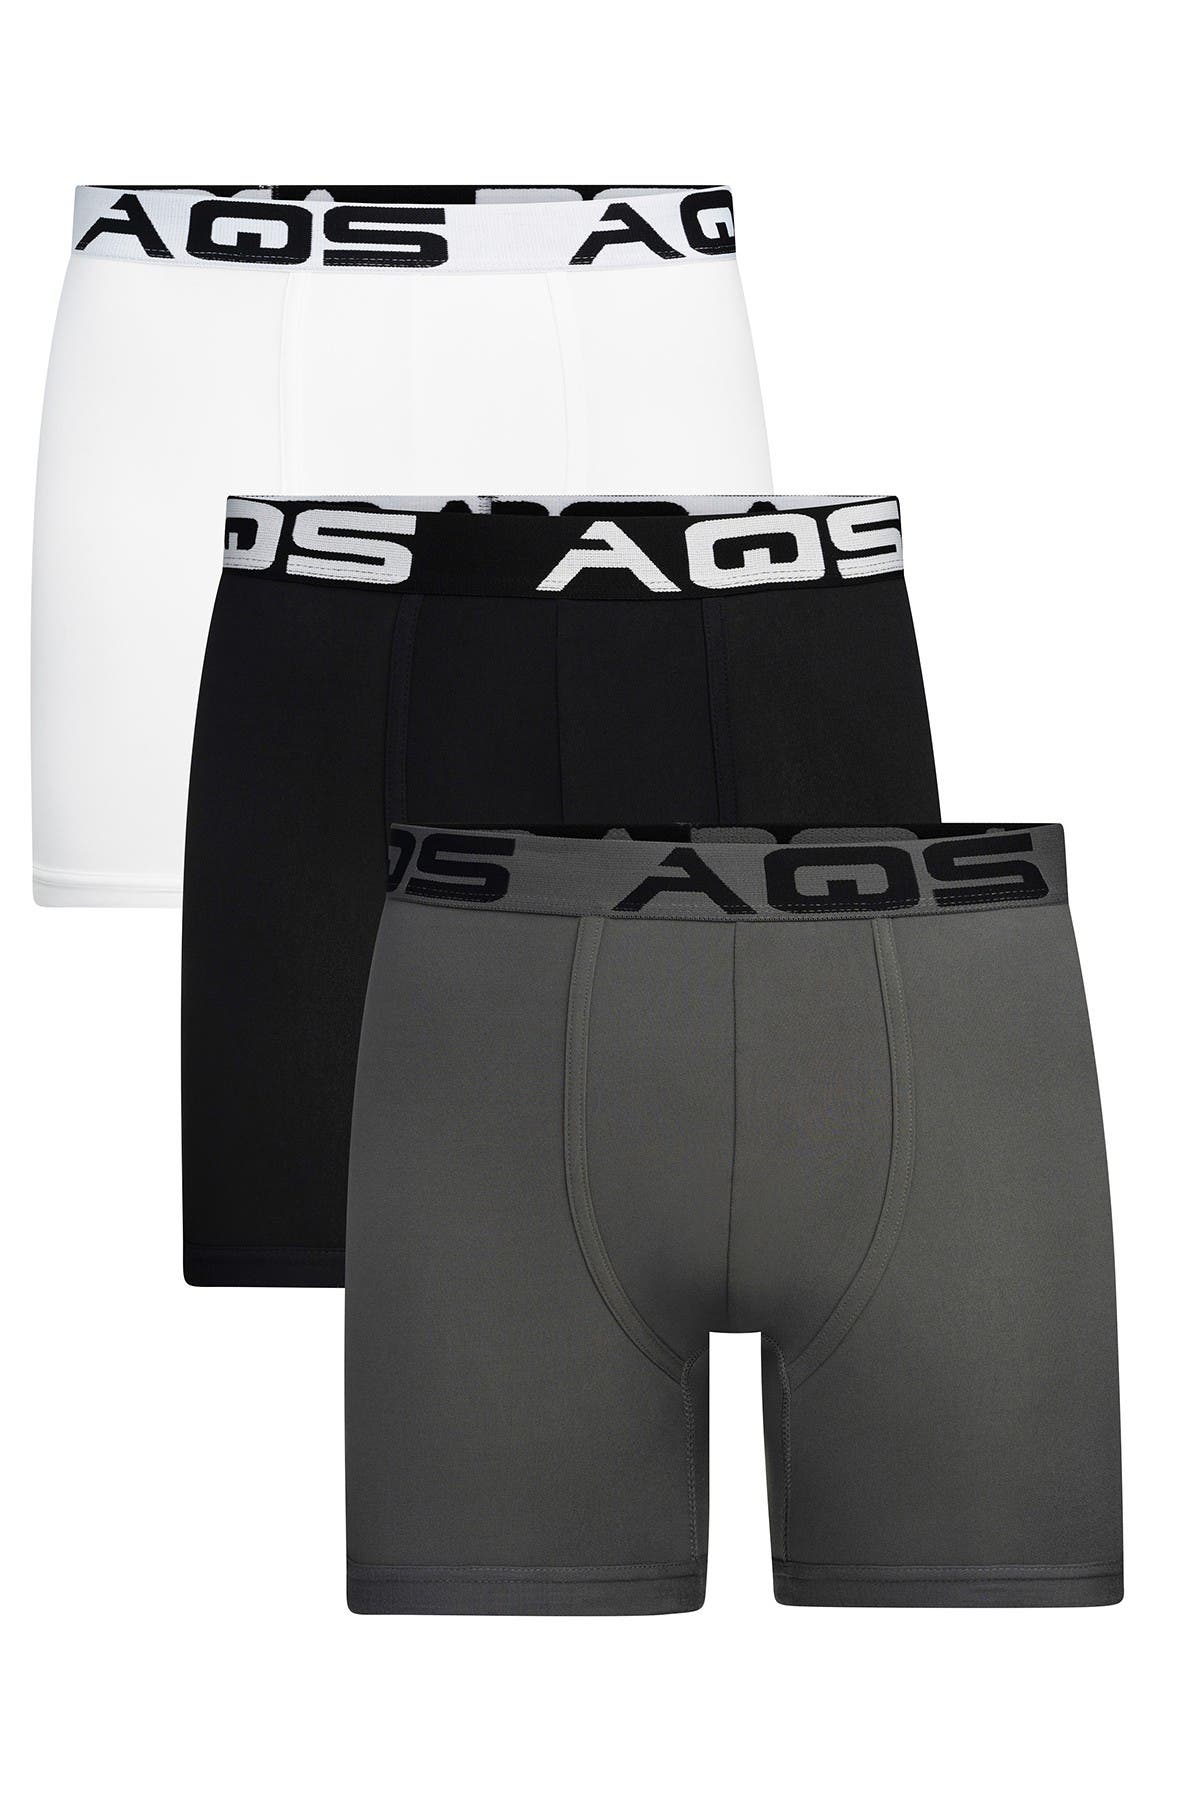 5% Lycra Black/Gray/White 3 Pack AQS Men's Boxer Briefs Trunks 95% Polyester 